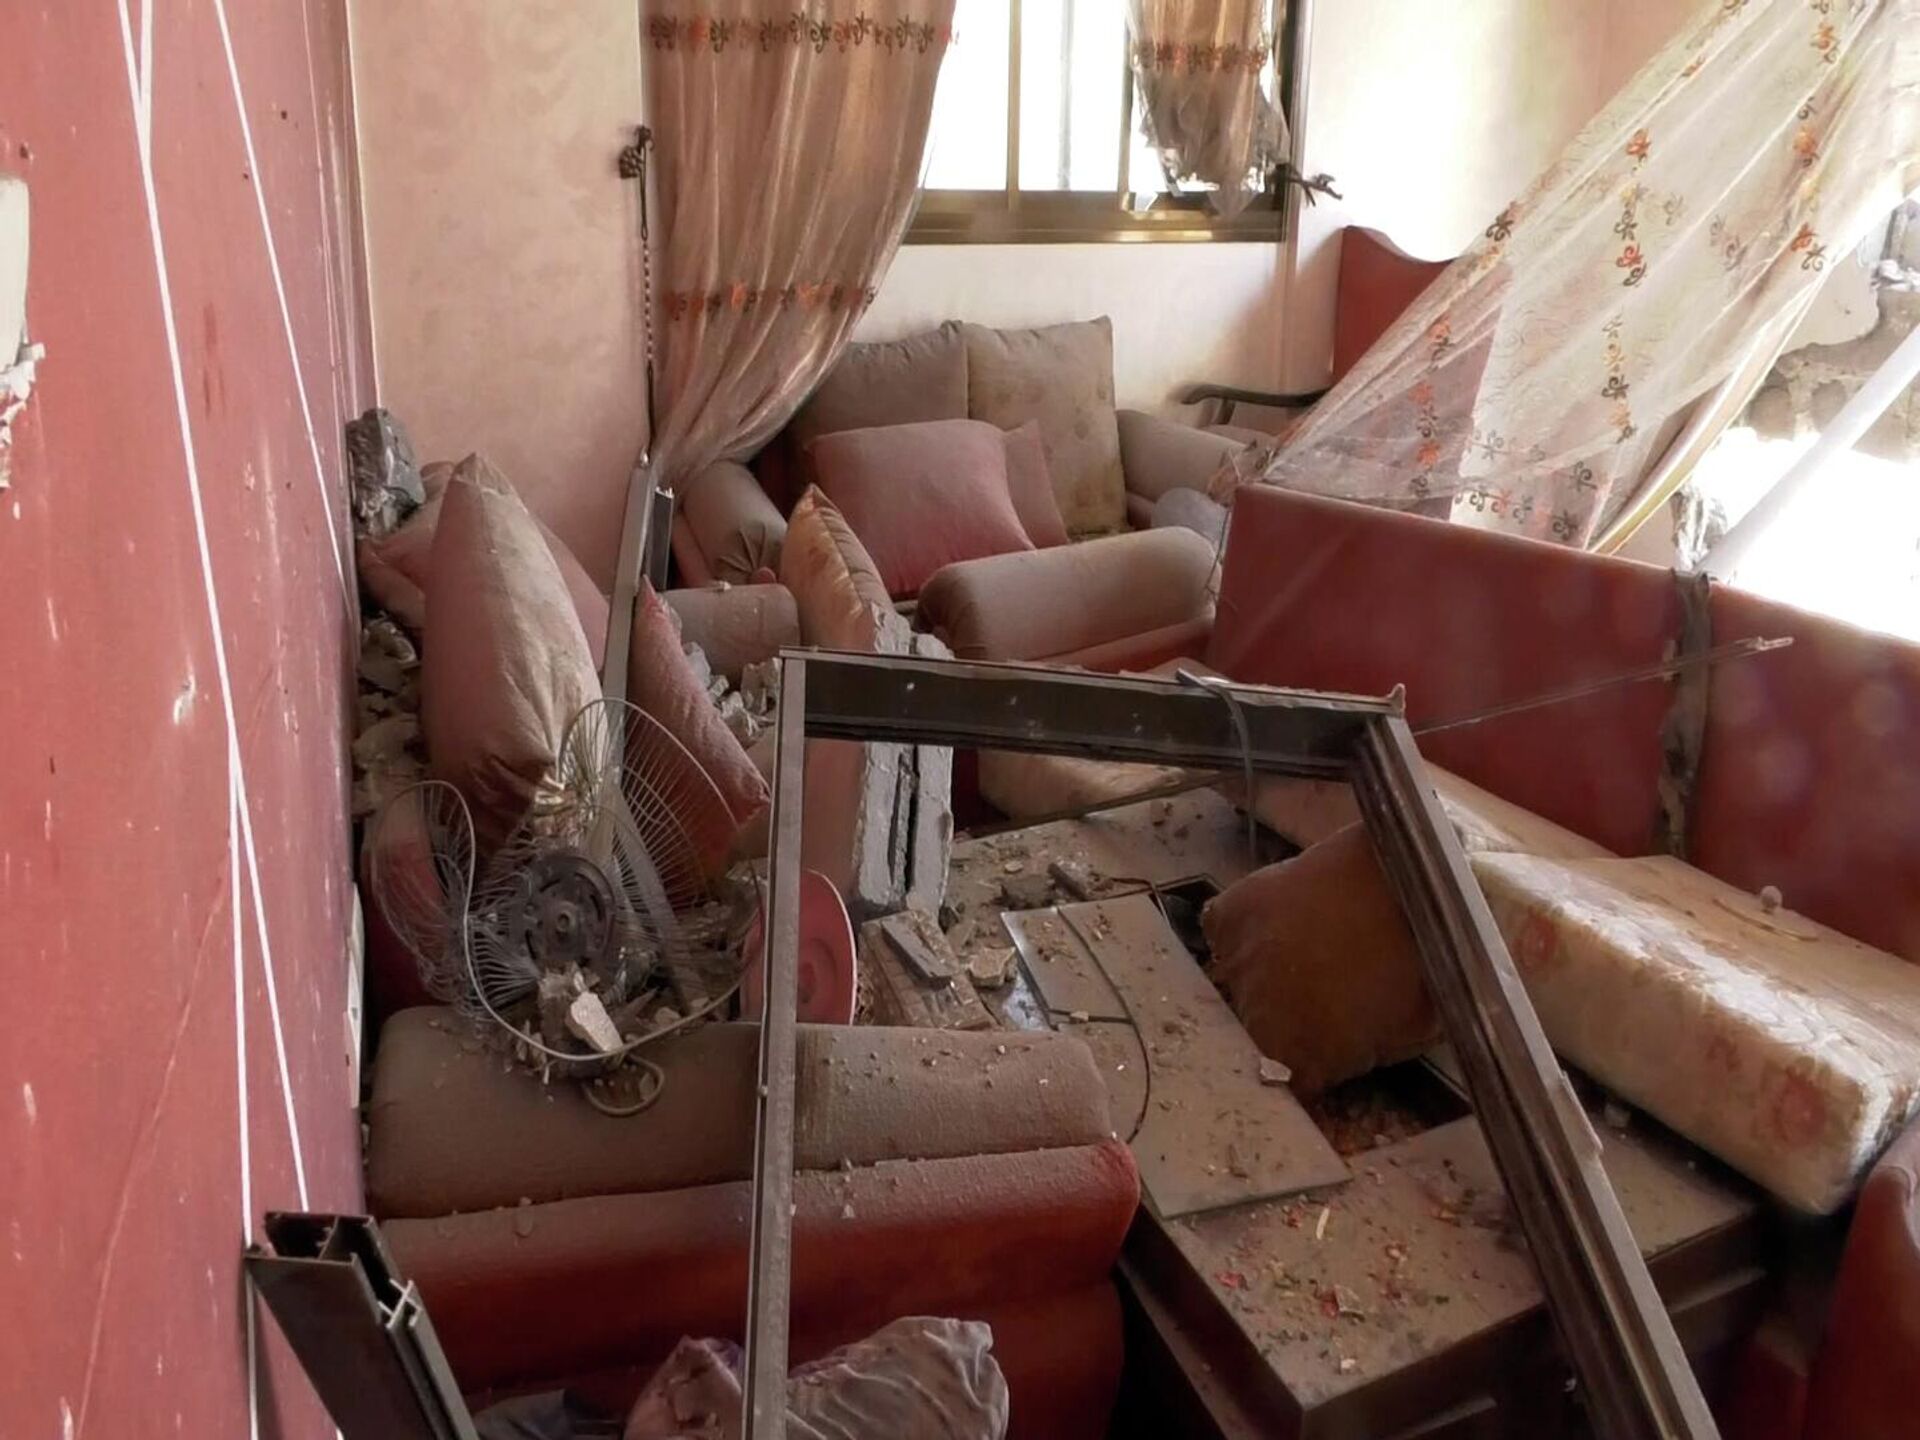  الطائرات الإسرائيلية تدمر عدة منازل بالكامل في قطاع غزة - سبوتنيك عربي, 1920, 06.08.2022